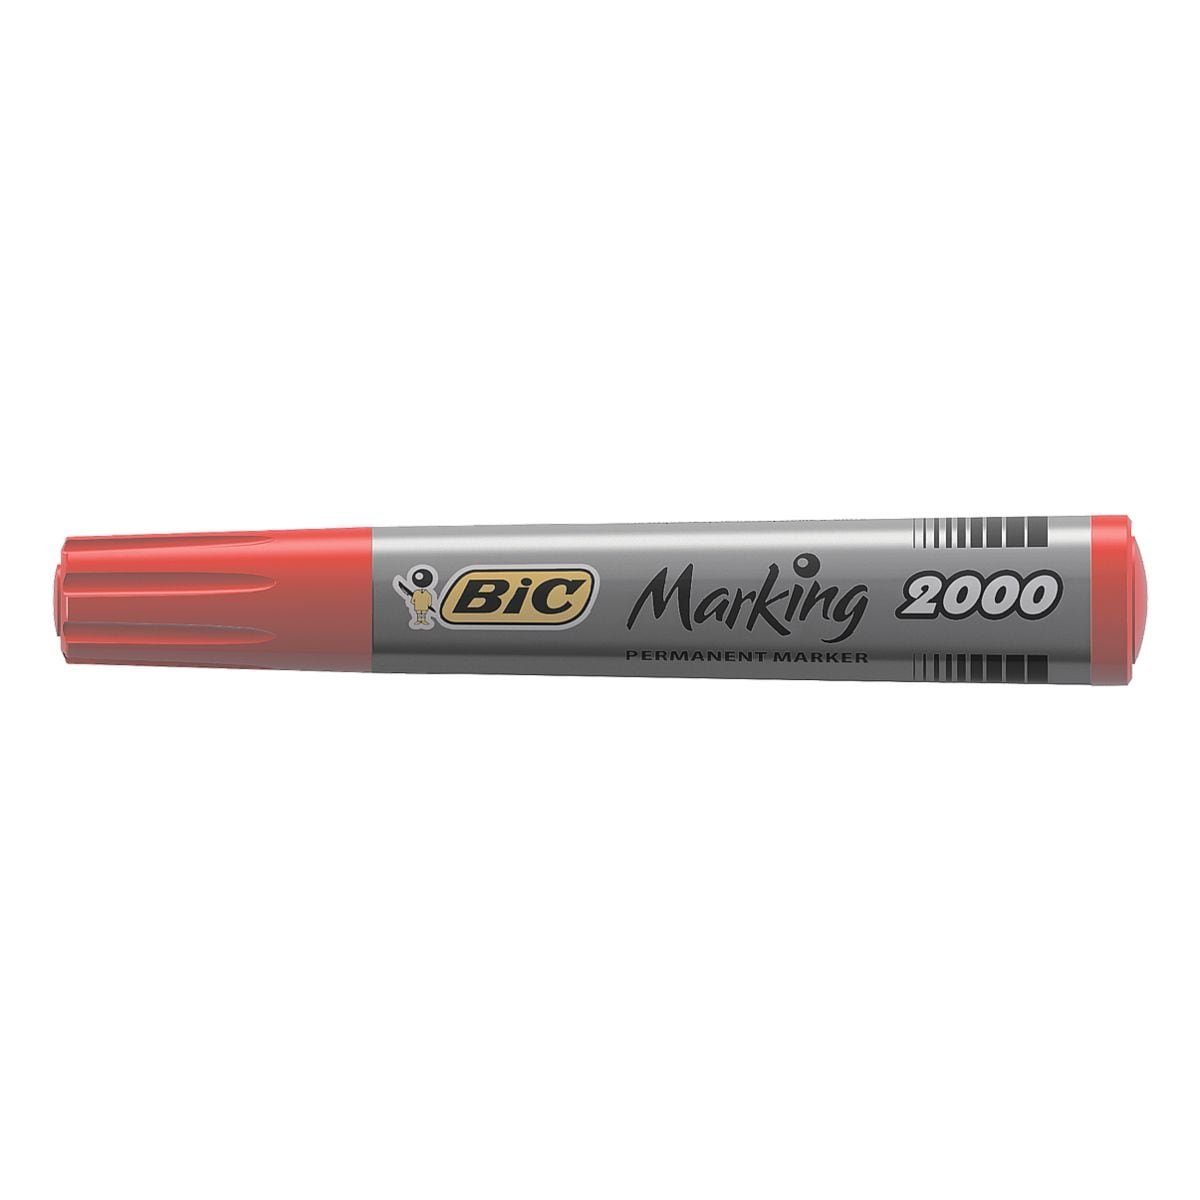 BIC Permanentmarker Marking 2000, Wochen mit Austrocknungsschutz rot offenlagerfähig 554): (ISO 3 mind